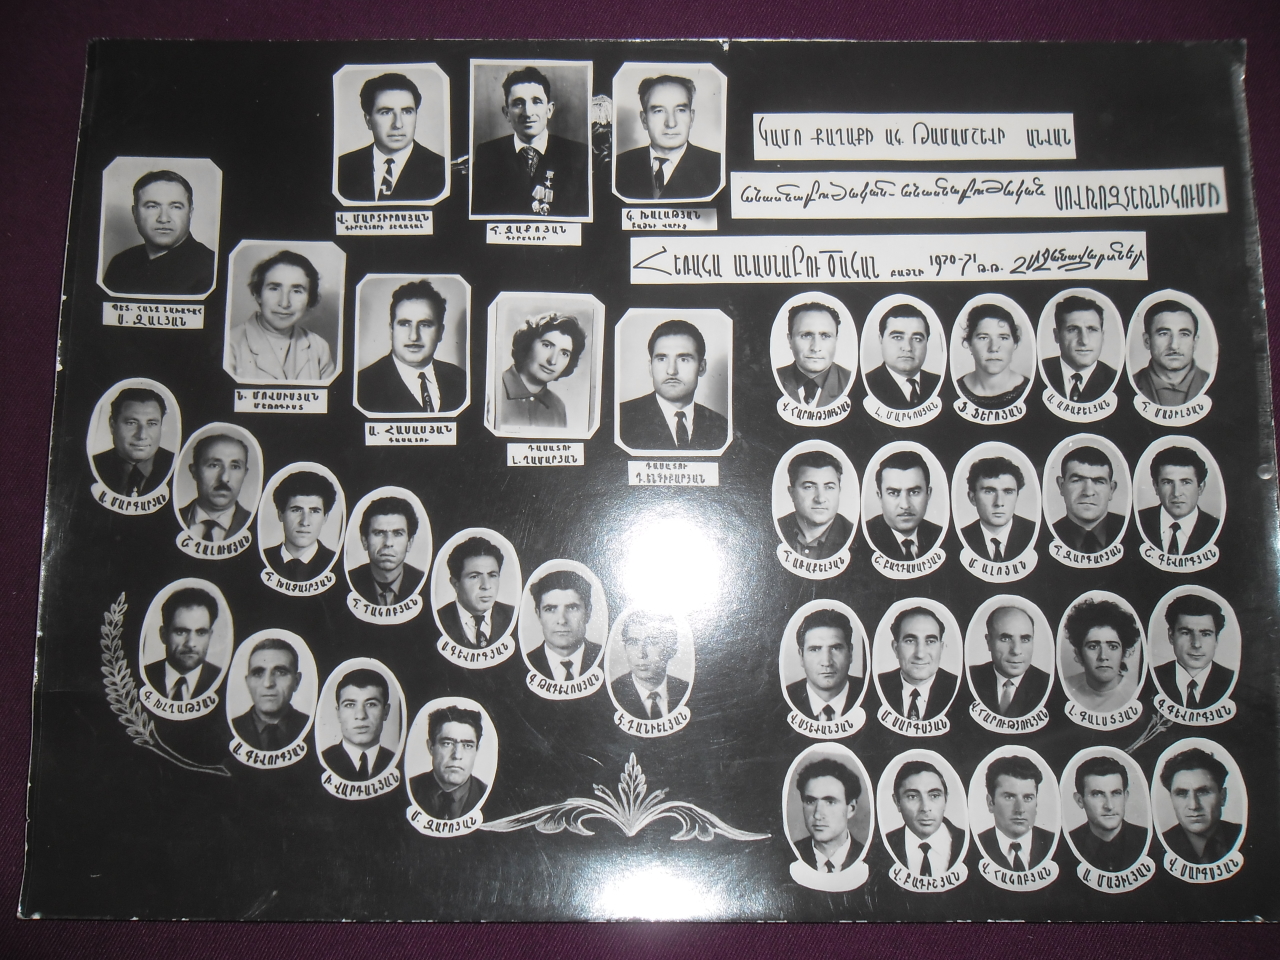 Խմբանկար՝ Կամո քաղաքի  Թամամշևի անվան անասնաբուժական-անասնաբուծական սովխոզ տեխնիկումի 1970-71  ուս. տարվա շրջանավարտներ